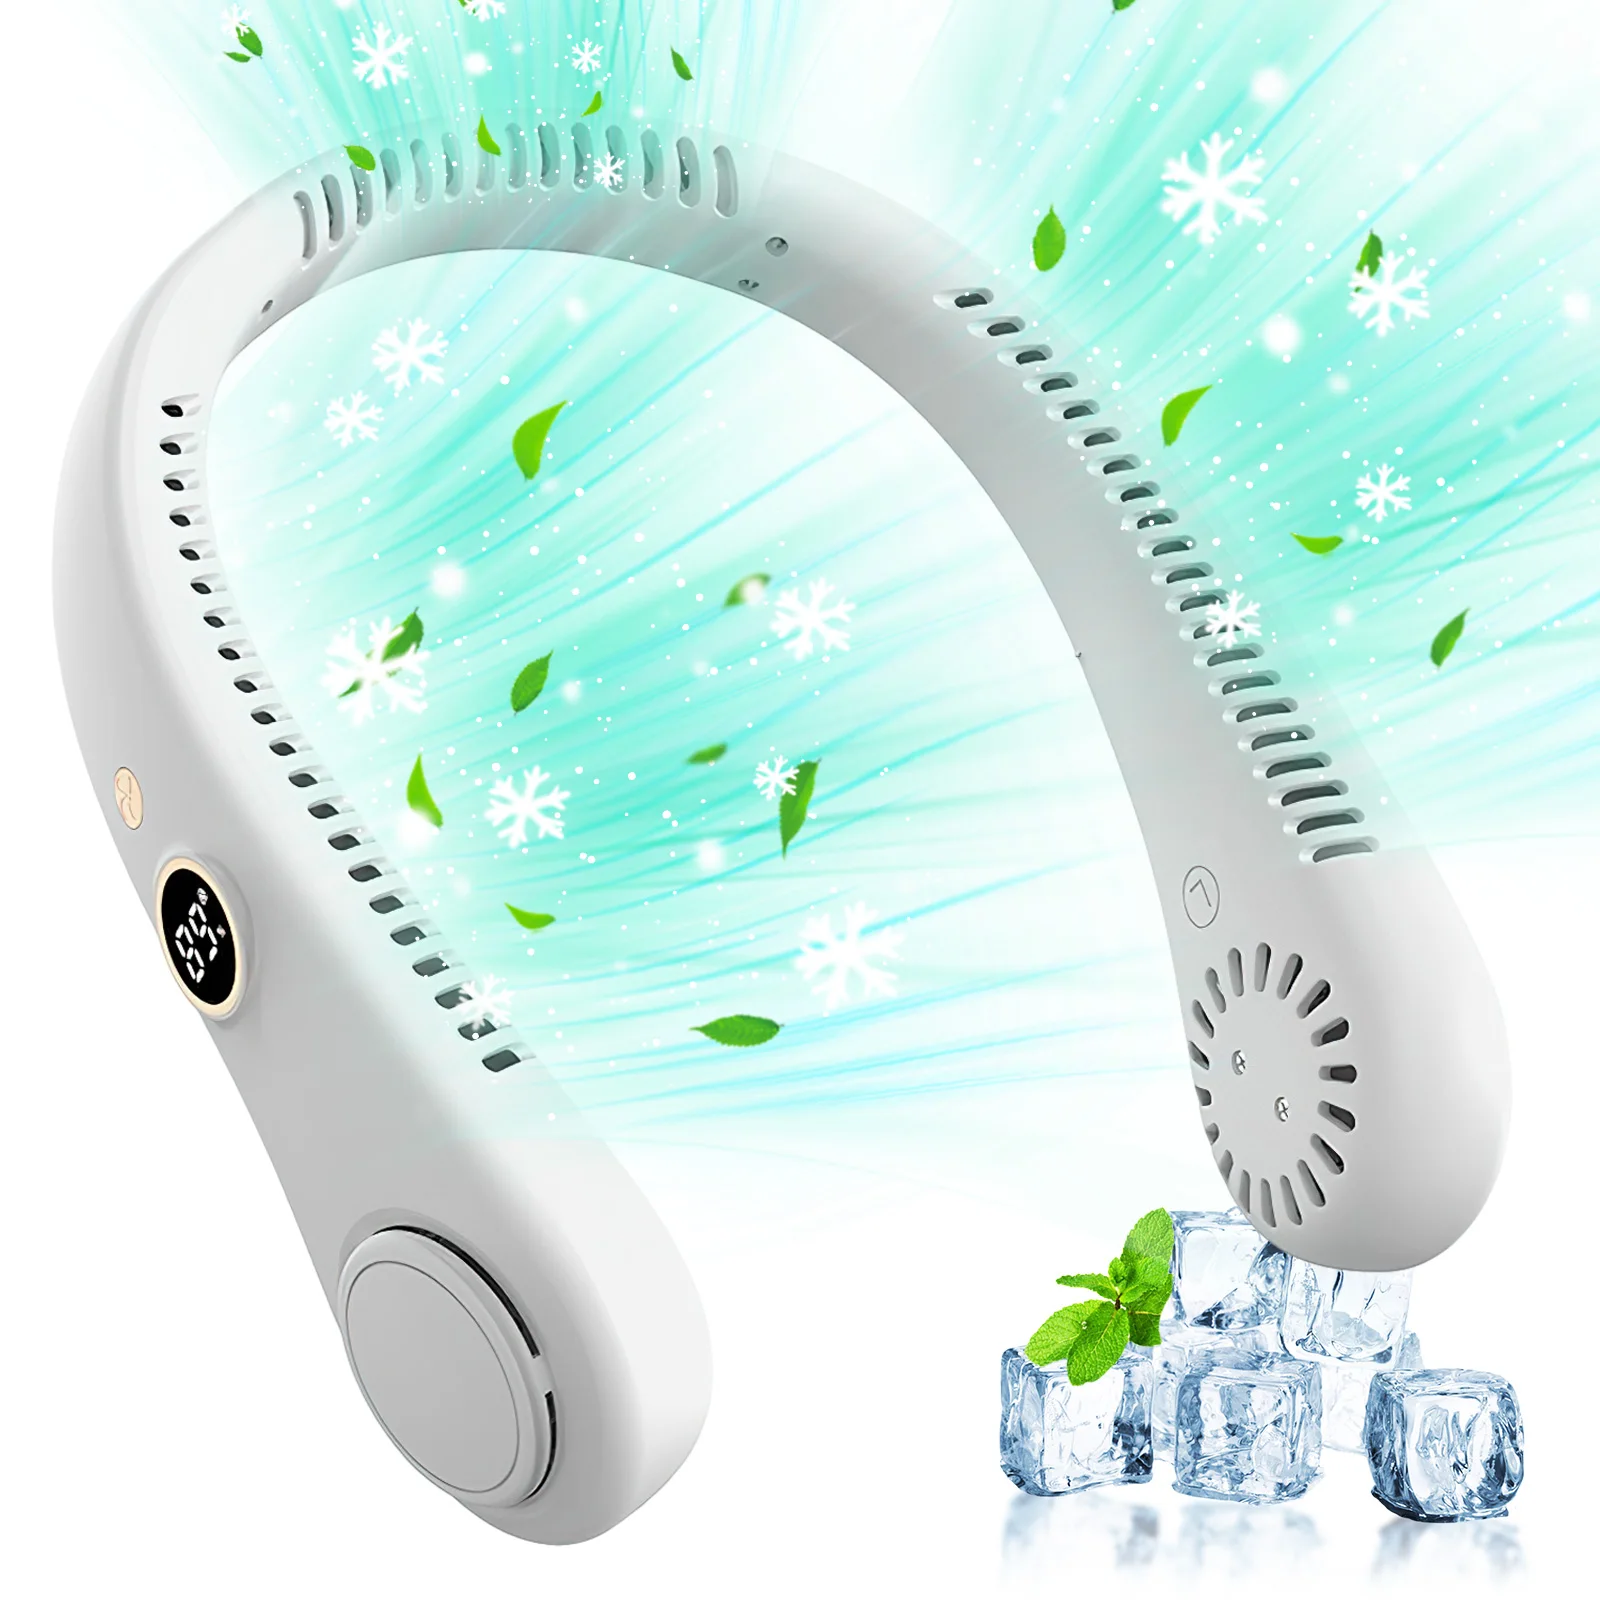 INN® Ventilateur à main Mini ventilateur portatif sans lame rechargeab –